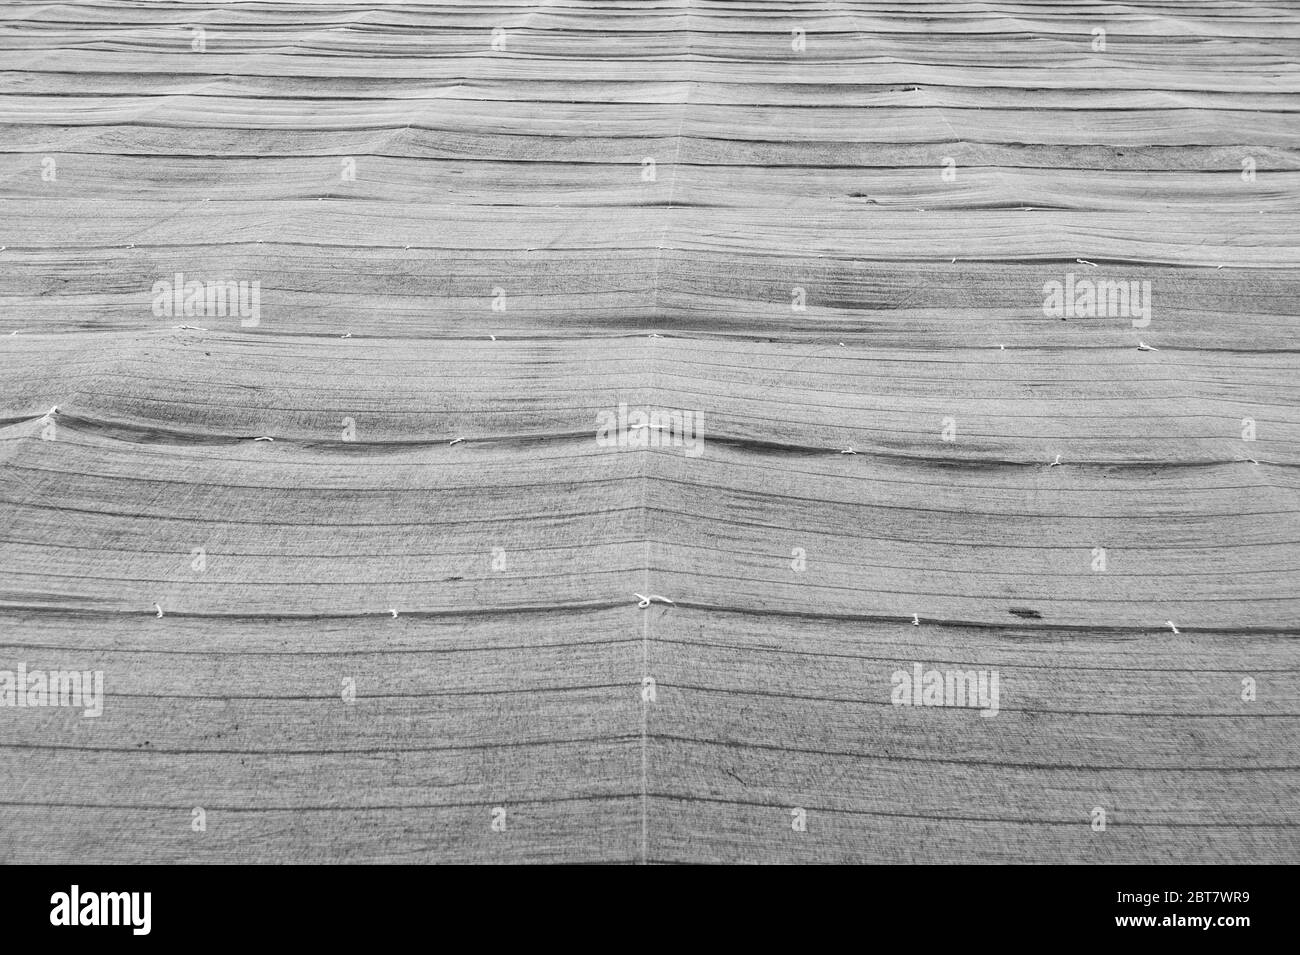 Filet d'ombre agricole utilisé dans les plantations de thé vert de Fuji City, préfecture de Shizuoka, Japon. Vue avant. Tir horizontal. Banque D'Images